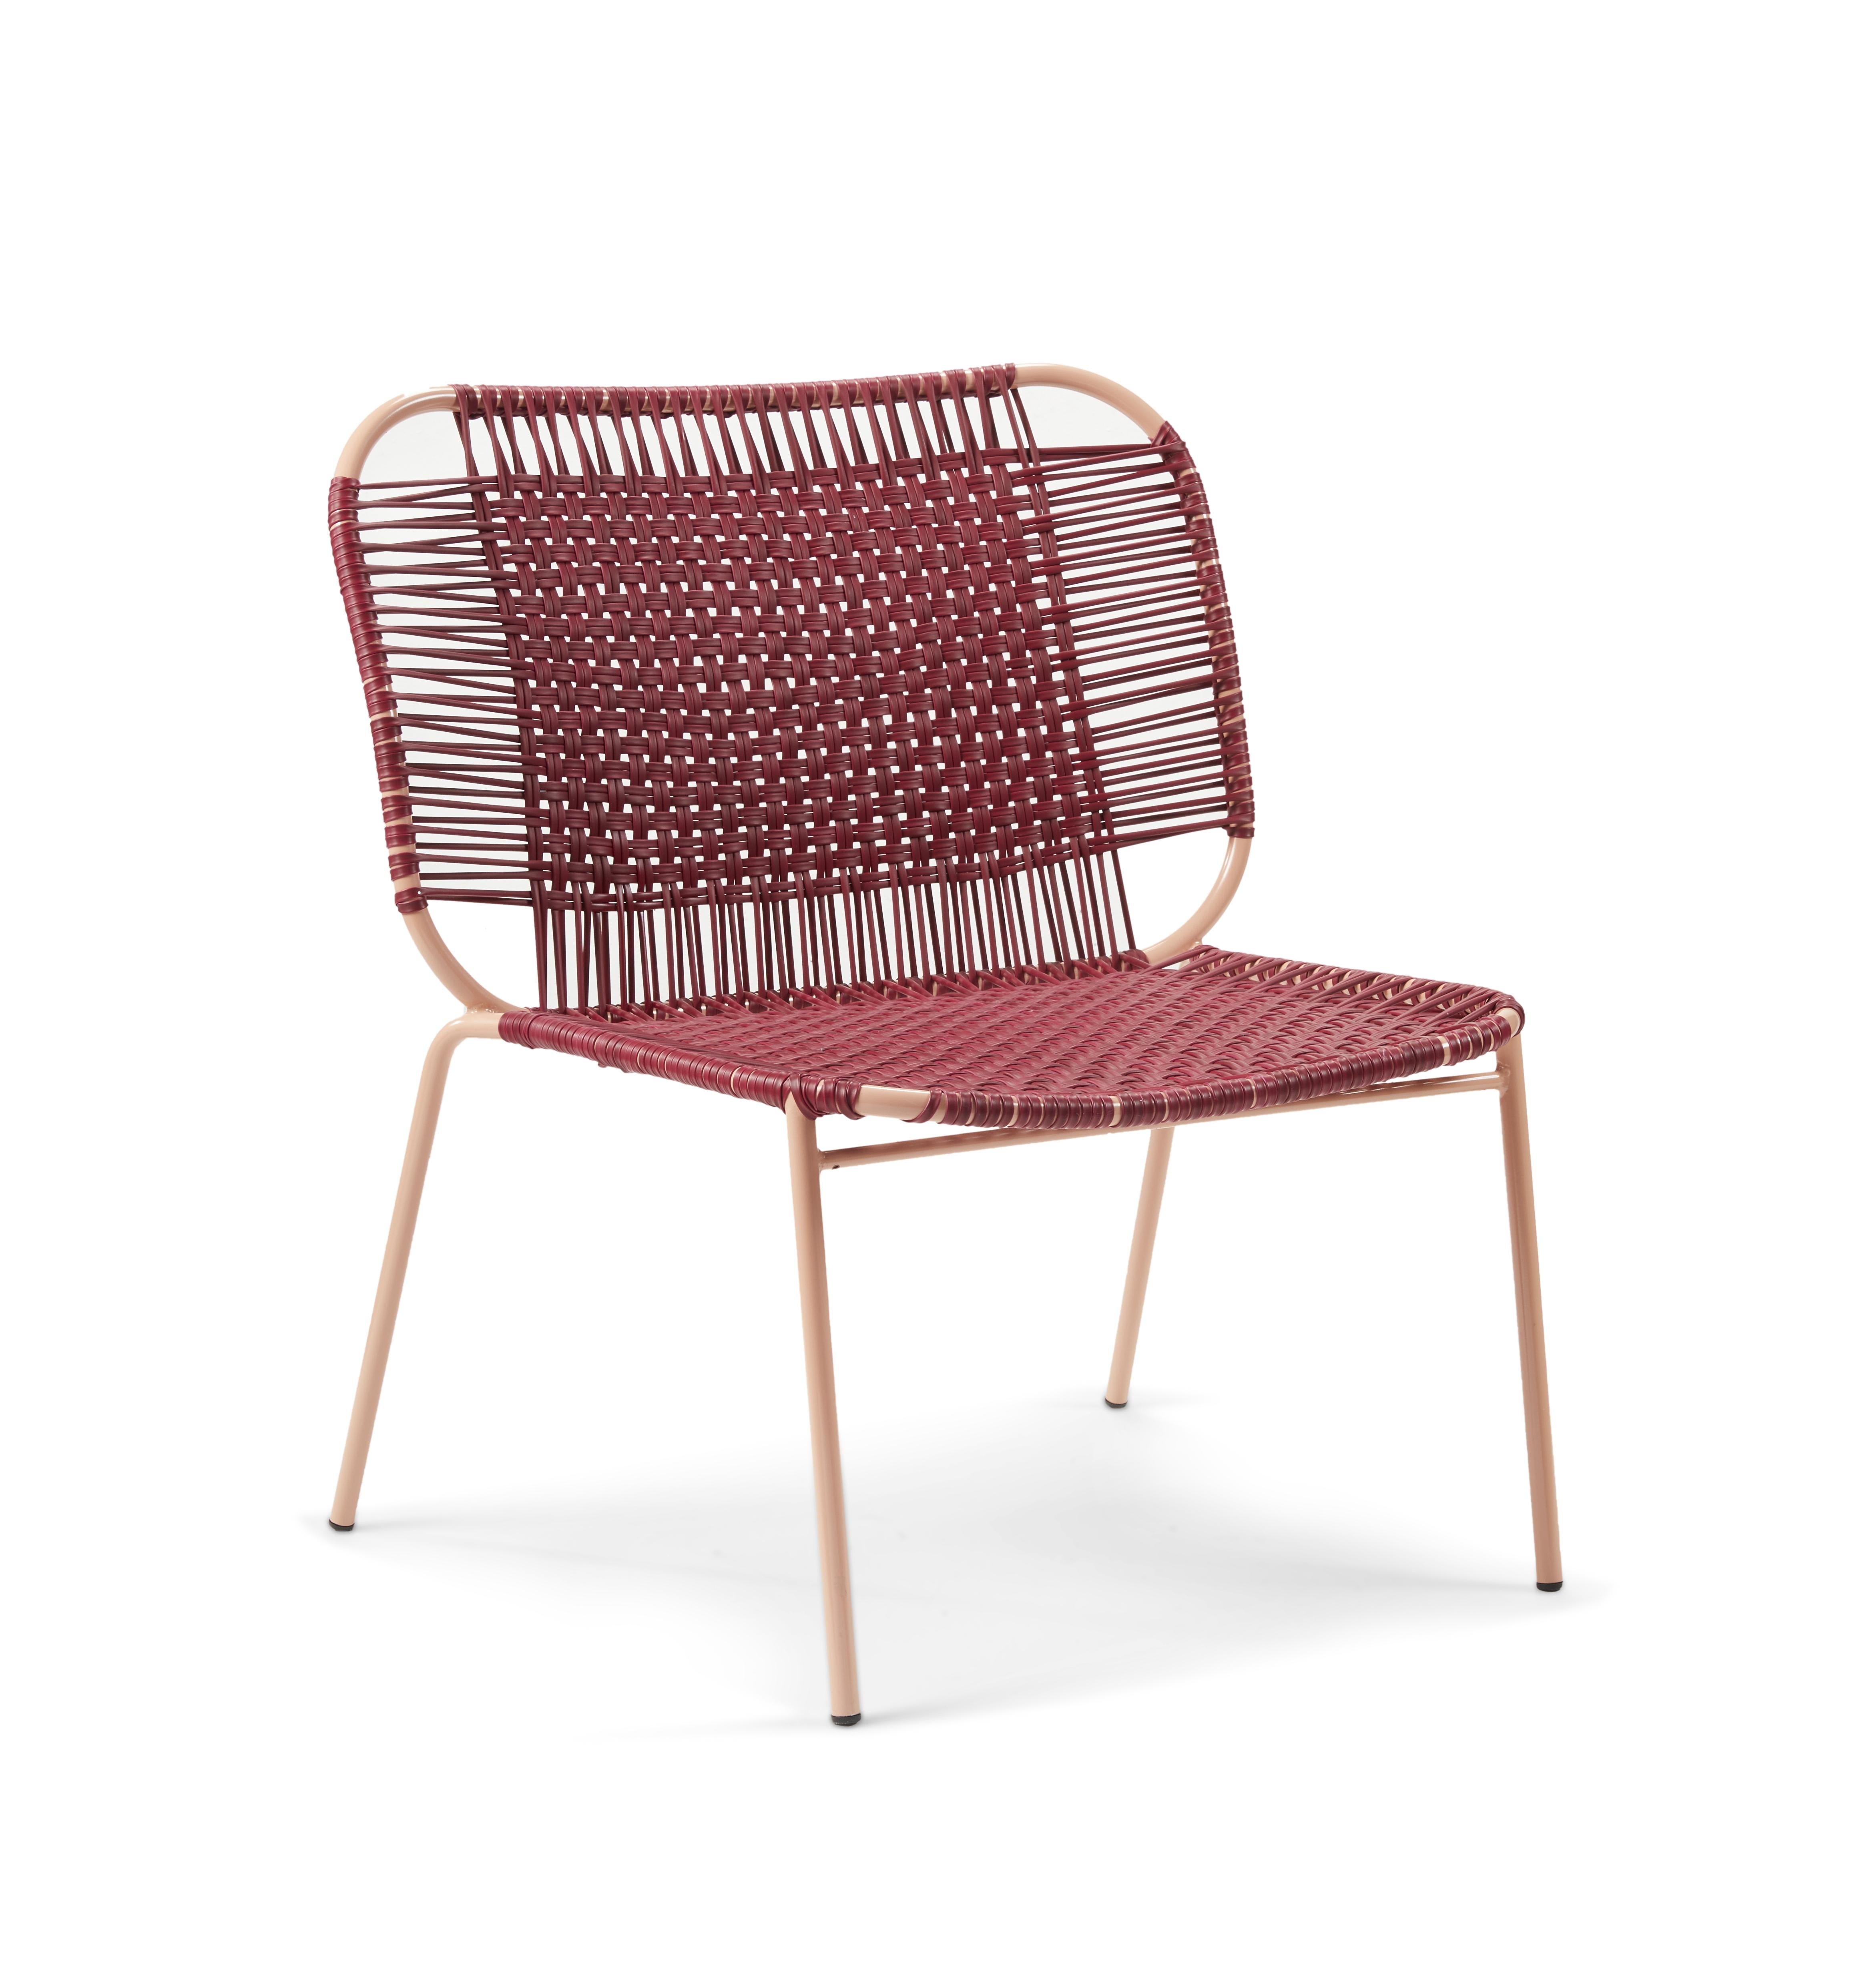 Lot de 2 chaises basses violettes Cielo lounge de Sebastian Herkner
Matériaux : Tubes d'acier galvanisés et revêtus de poudre. Les cordes en PVC sont fabriquées à partir de plastique recyclé.
Technique : Fabriqué à partir de plastique recyclé et